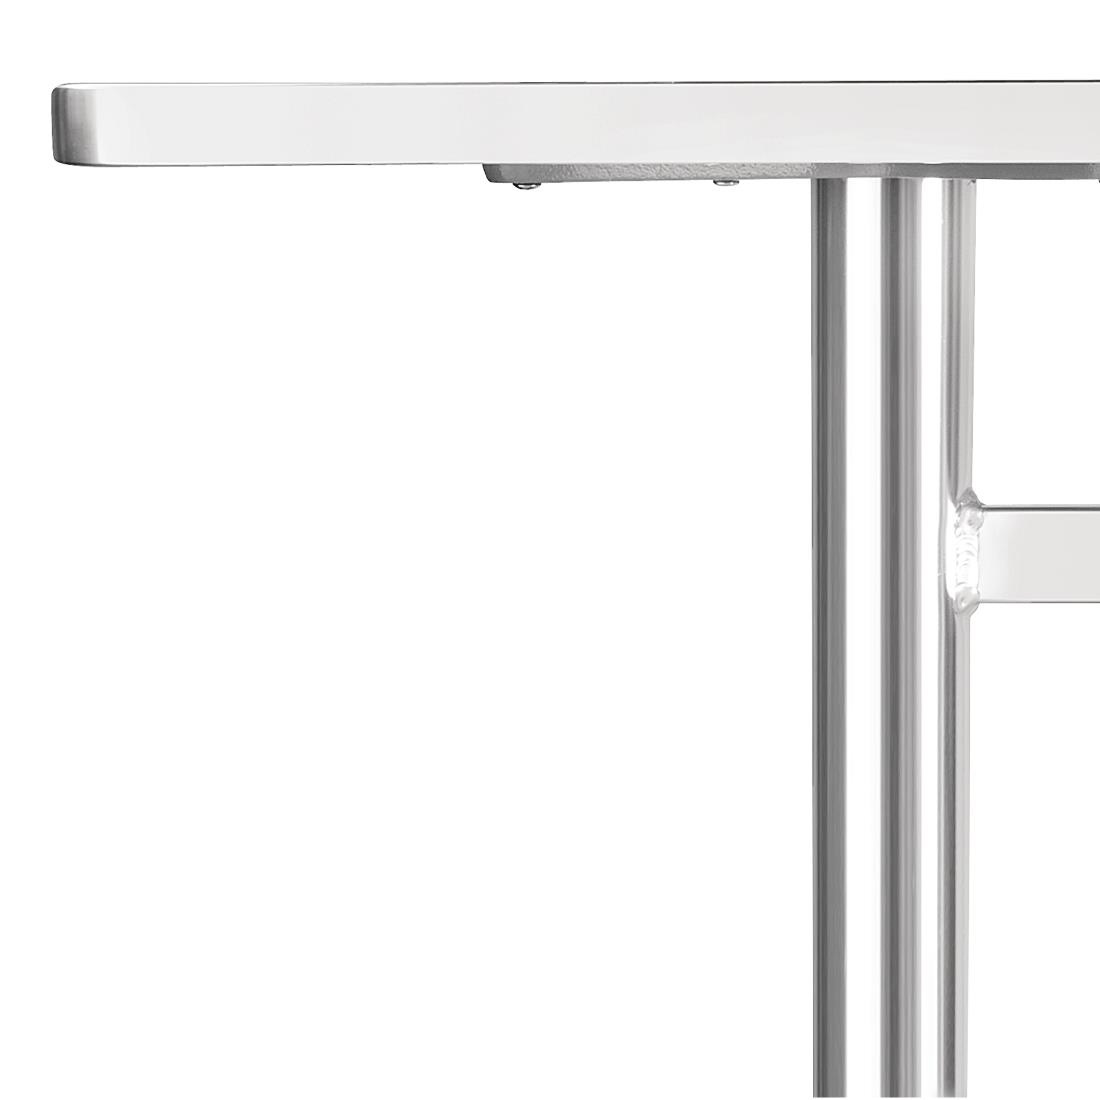 Rechteckiger Tisch | 72 x 120 x 60cm | Edelstahl/Aluminium 